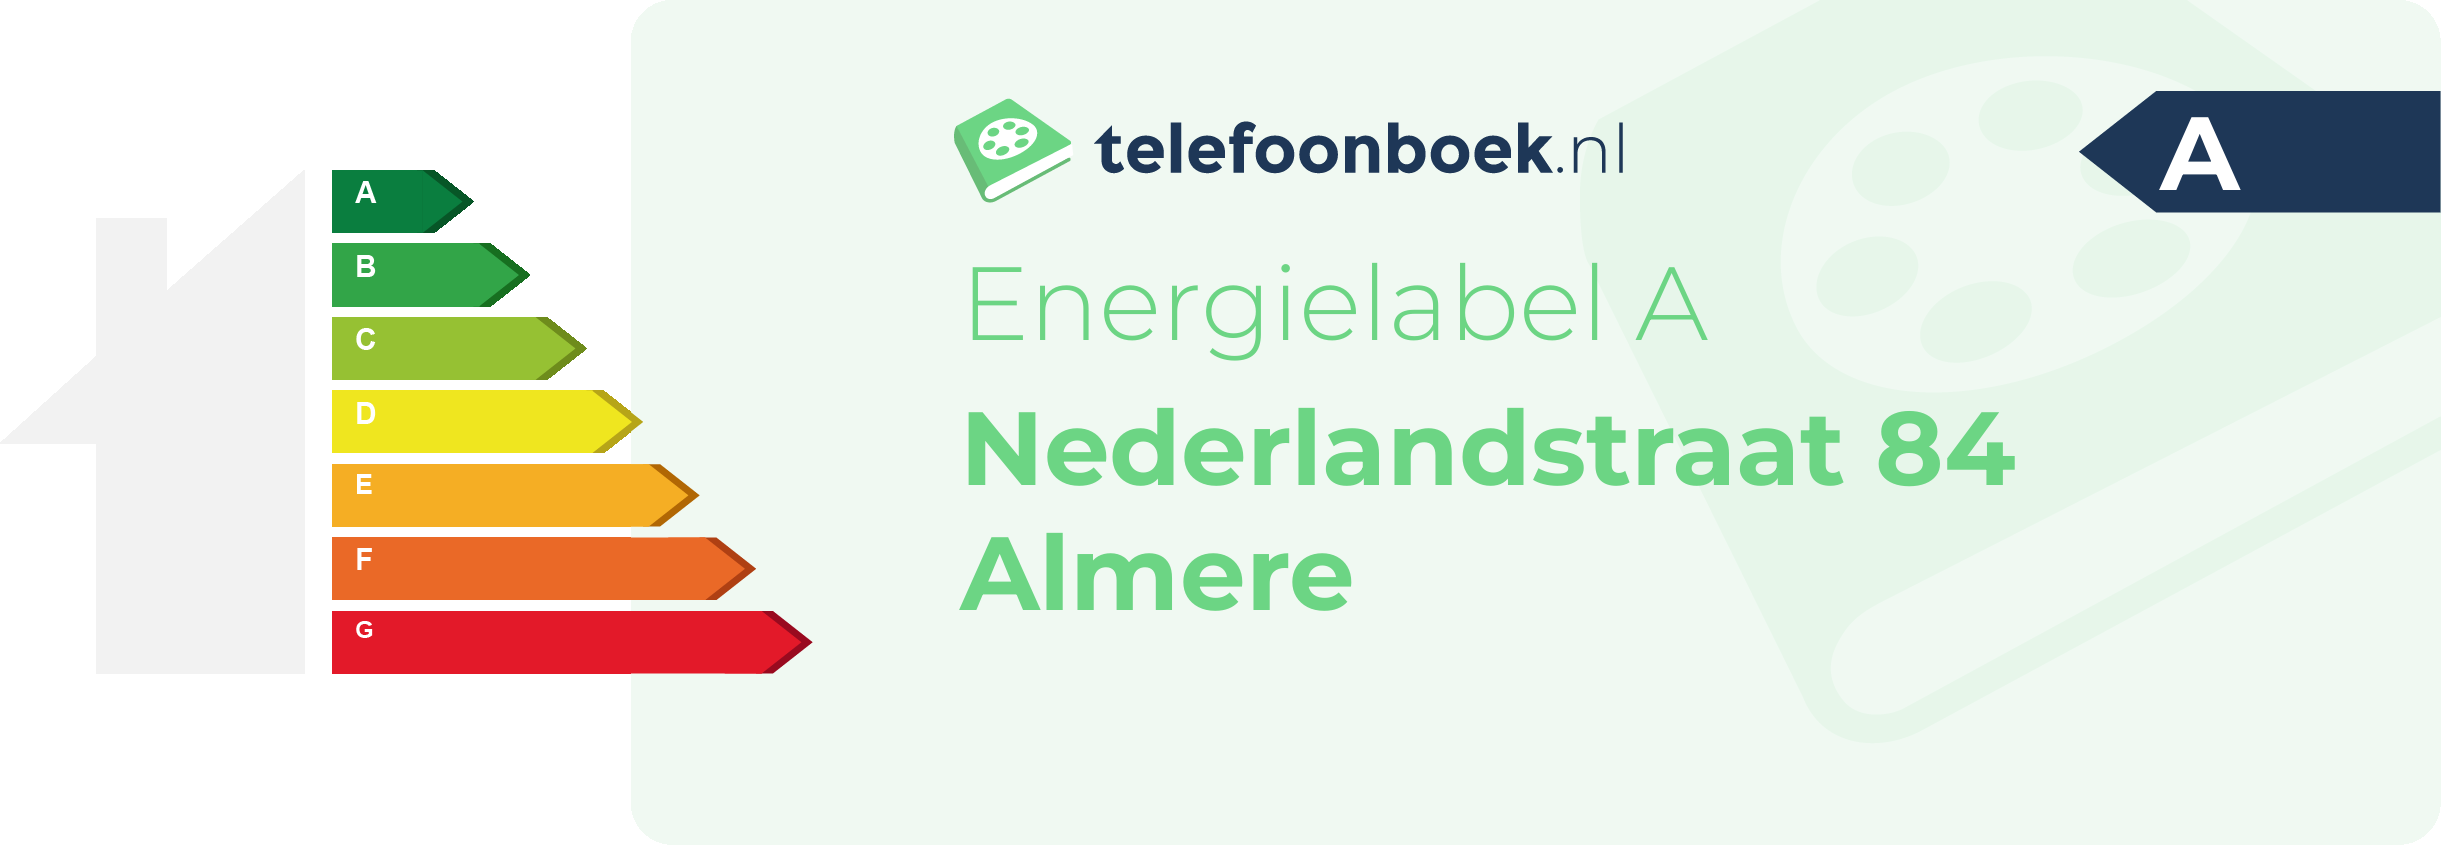 Energielabel Nederlandstraat 84 Almere